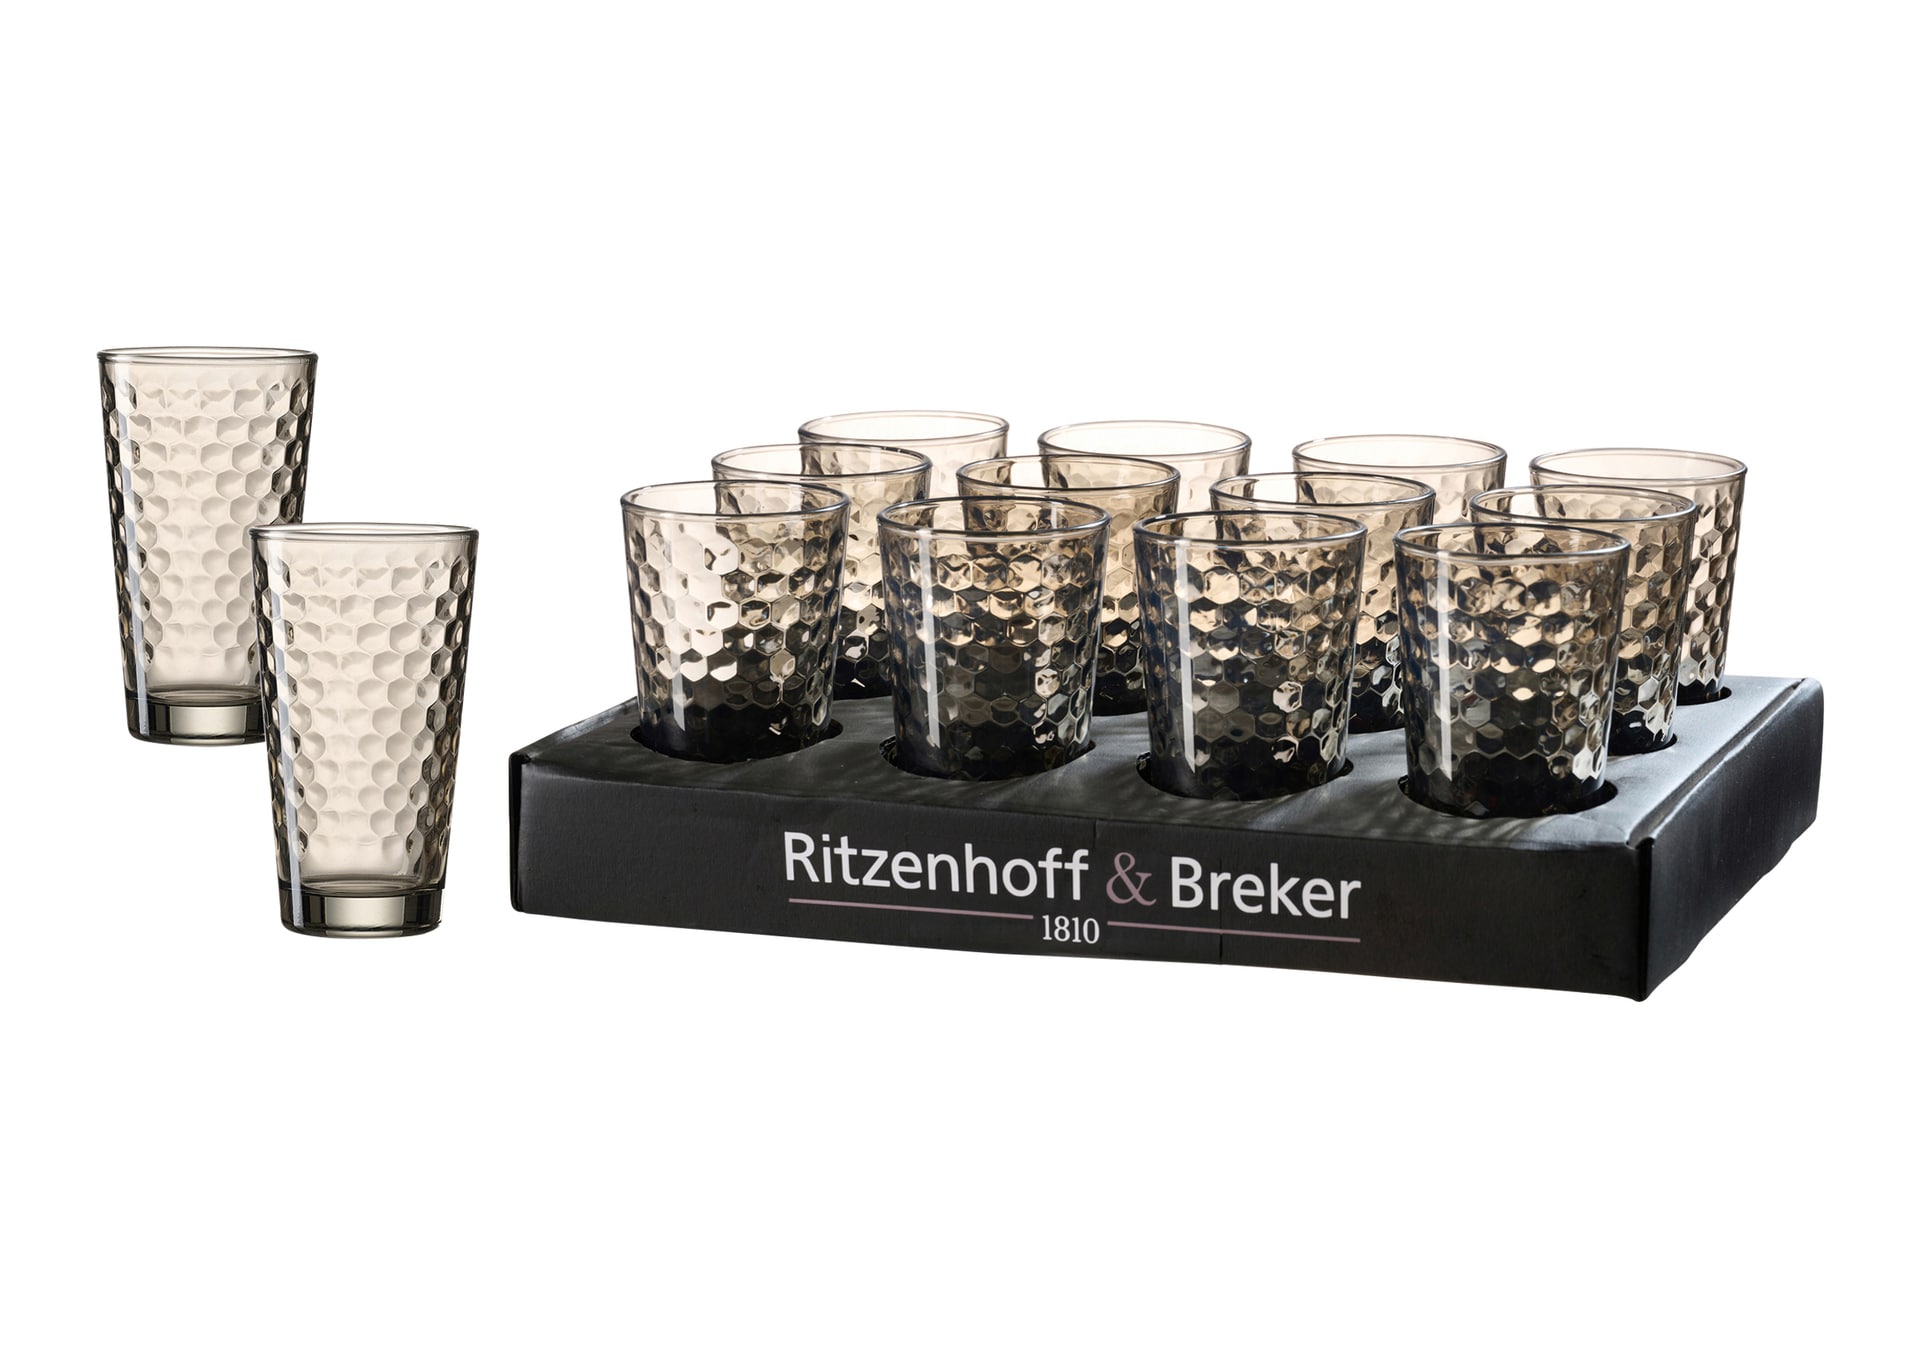 Ritzenhoff & Breker Longdrinkglas FAVO 6er Set 400 ml smoke Glas